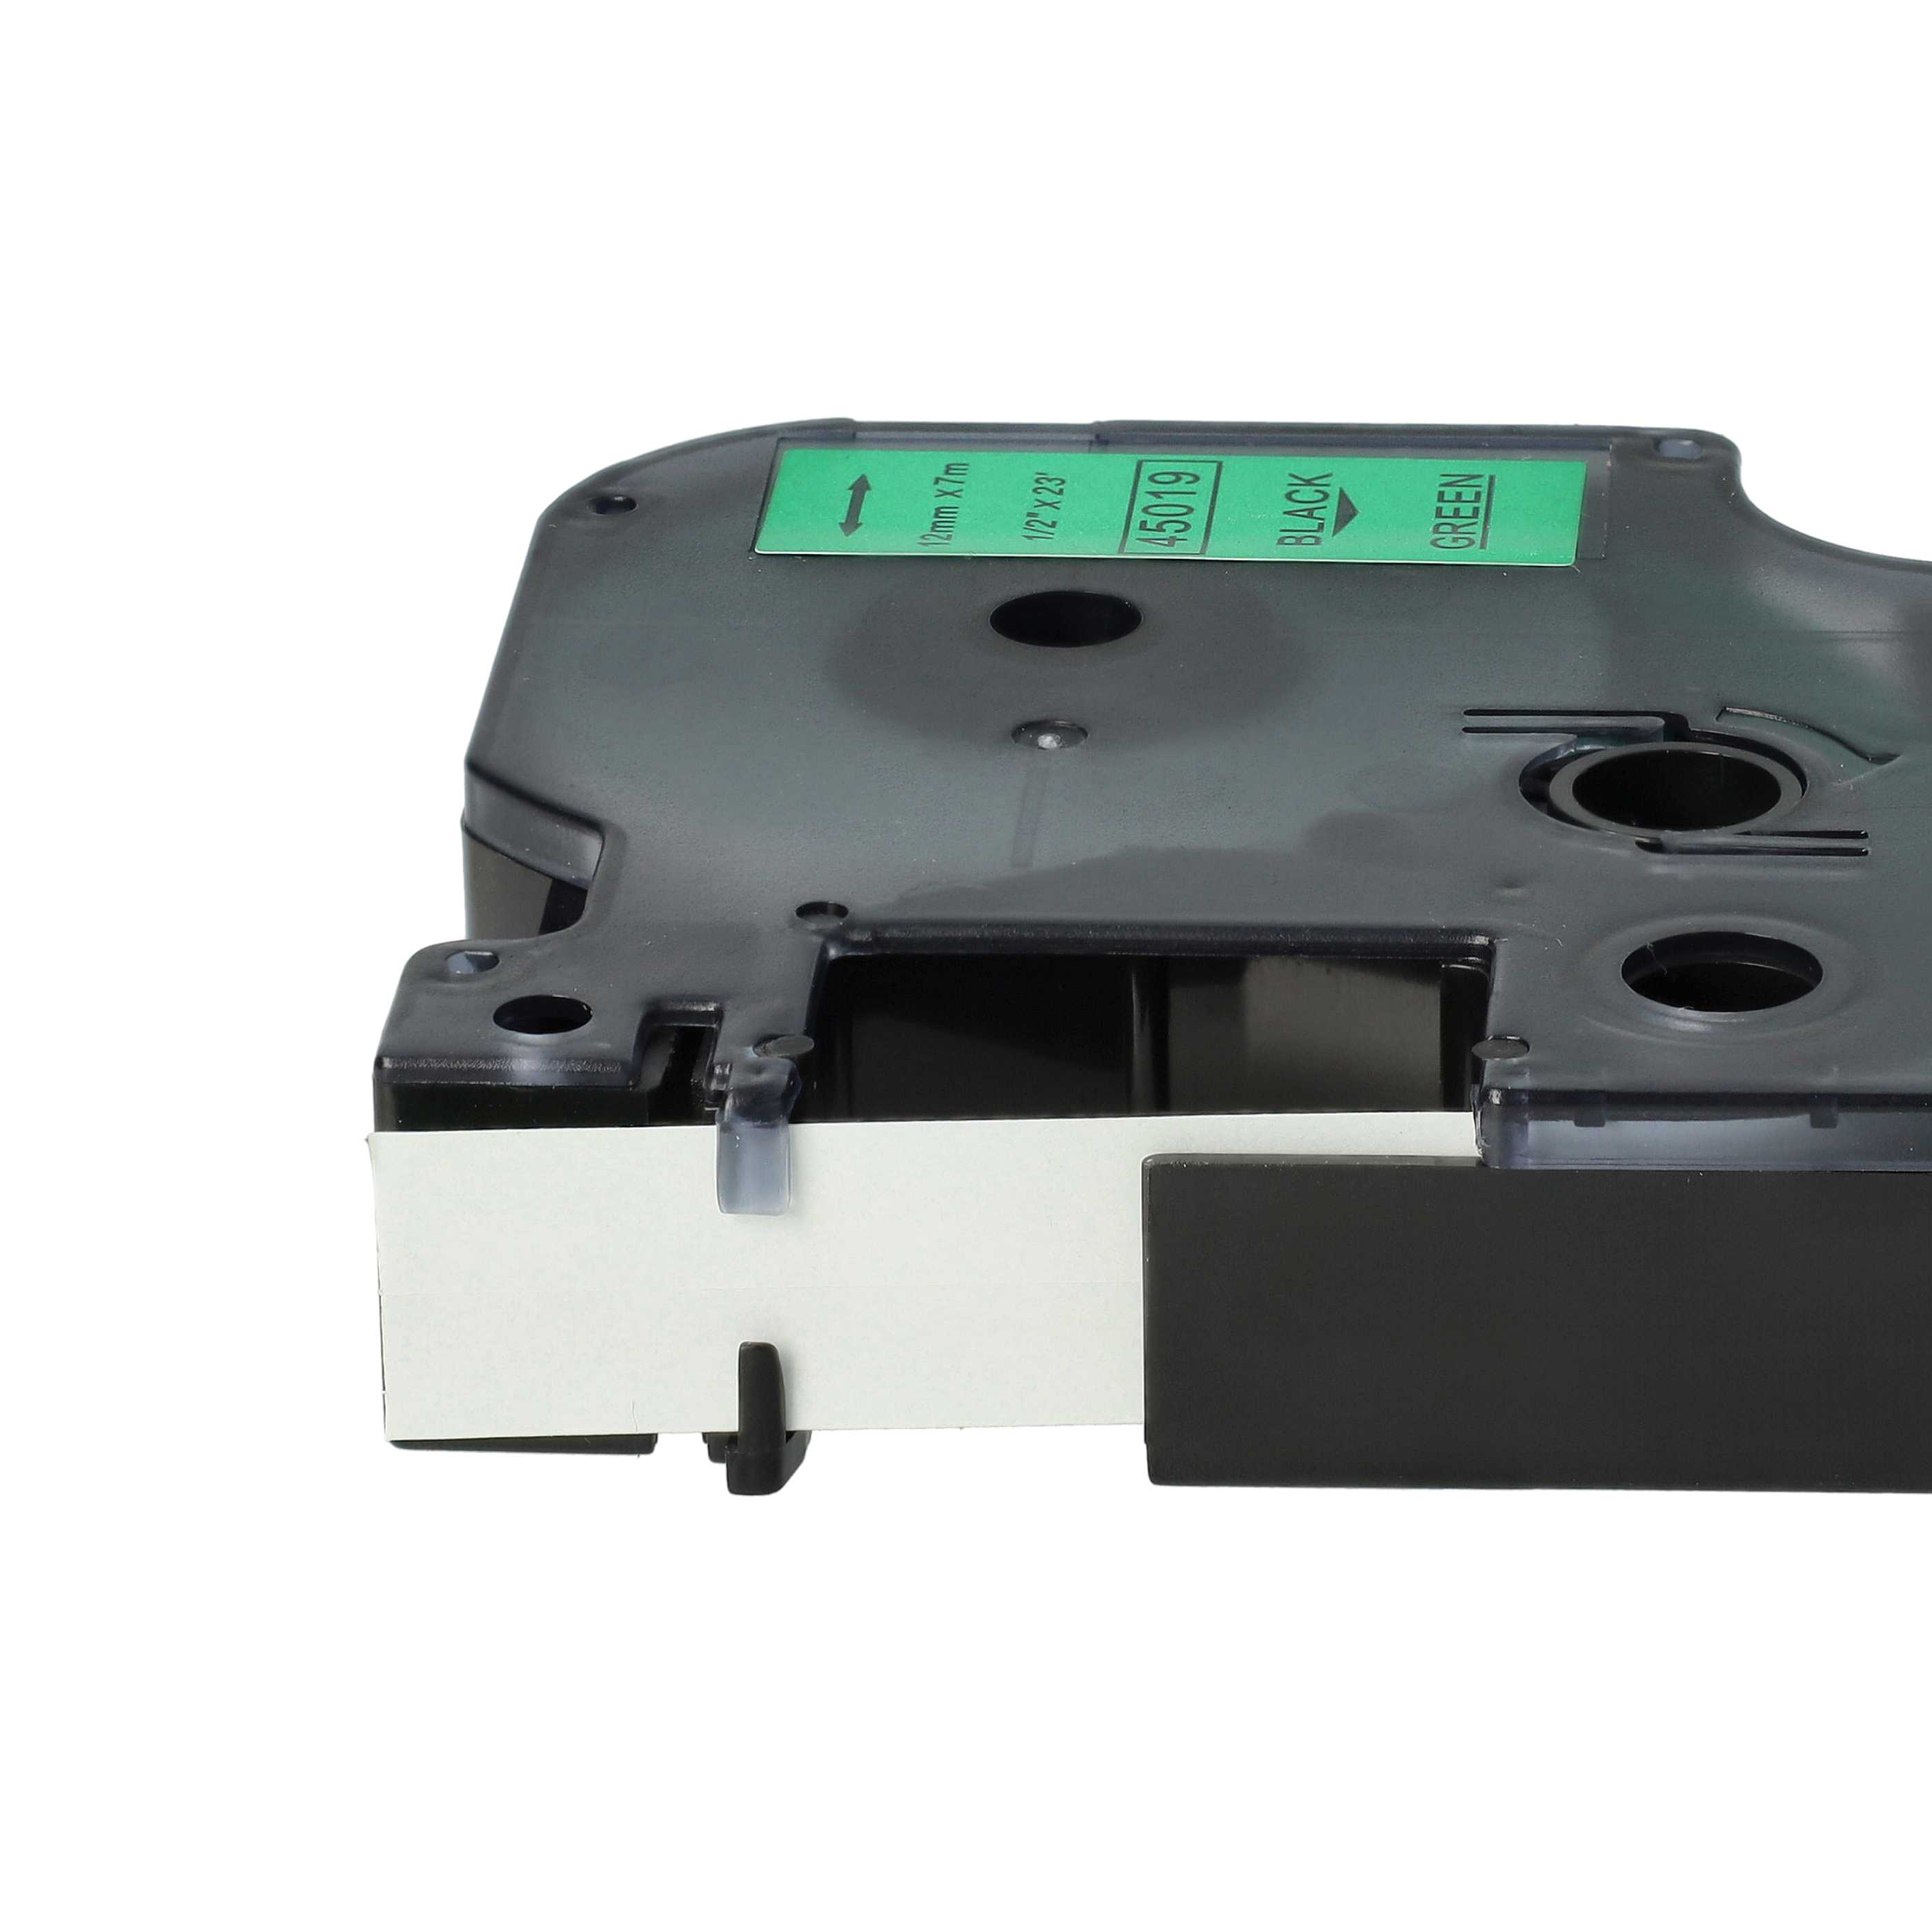 Cassette à ruban remplace Dymo 45019, D1 - 12mm lettrage Noir ruban Vert